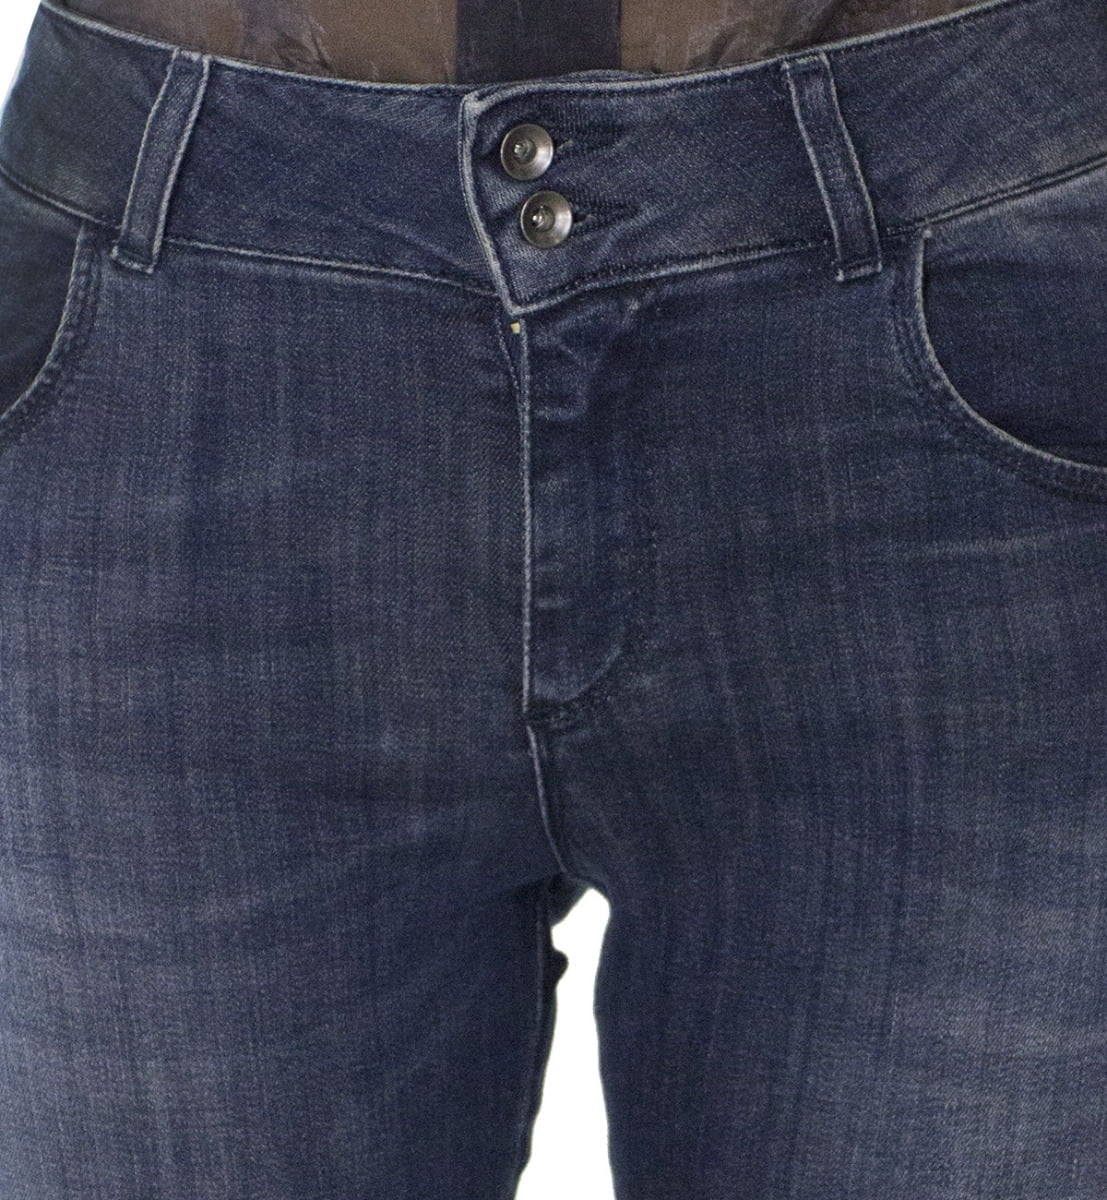 Jeans donna skinny elasticizzato lavaggio 1 sabbiato modello 5 tasche effetto push up